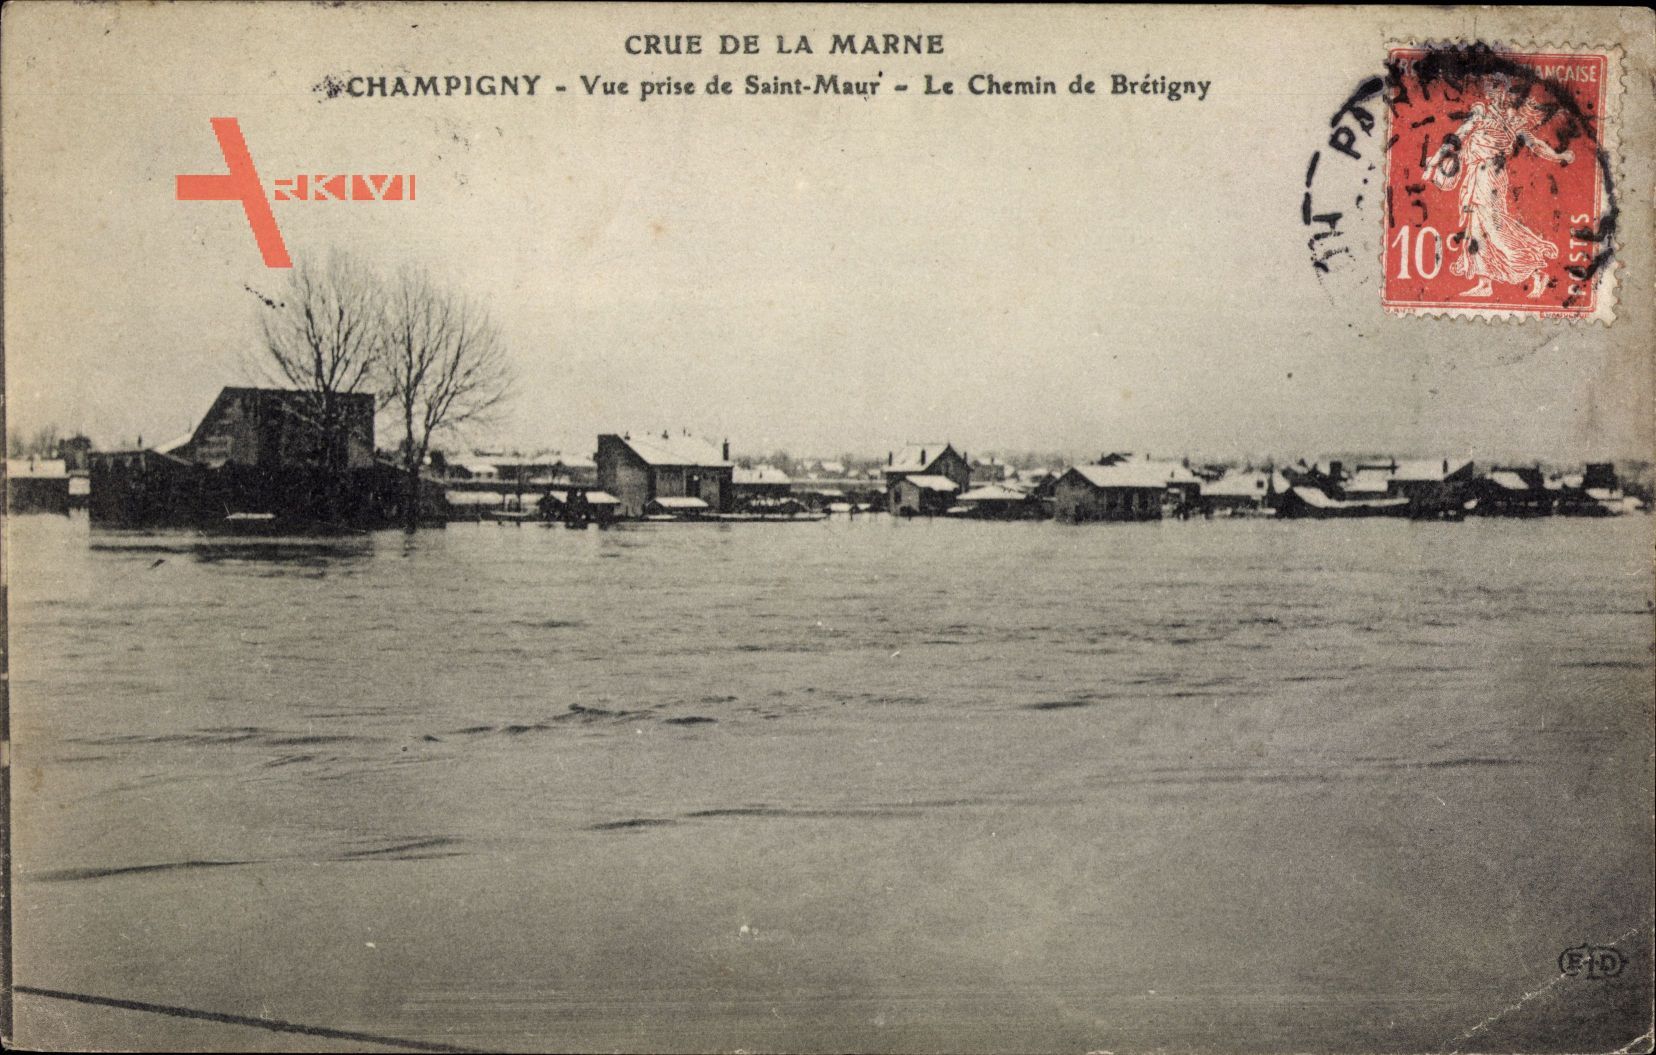 Champigny sur Marne Val de Marne, Crue de la Marne, vue prise de Saint Maur